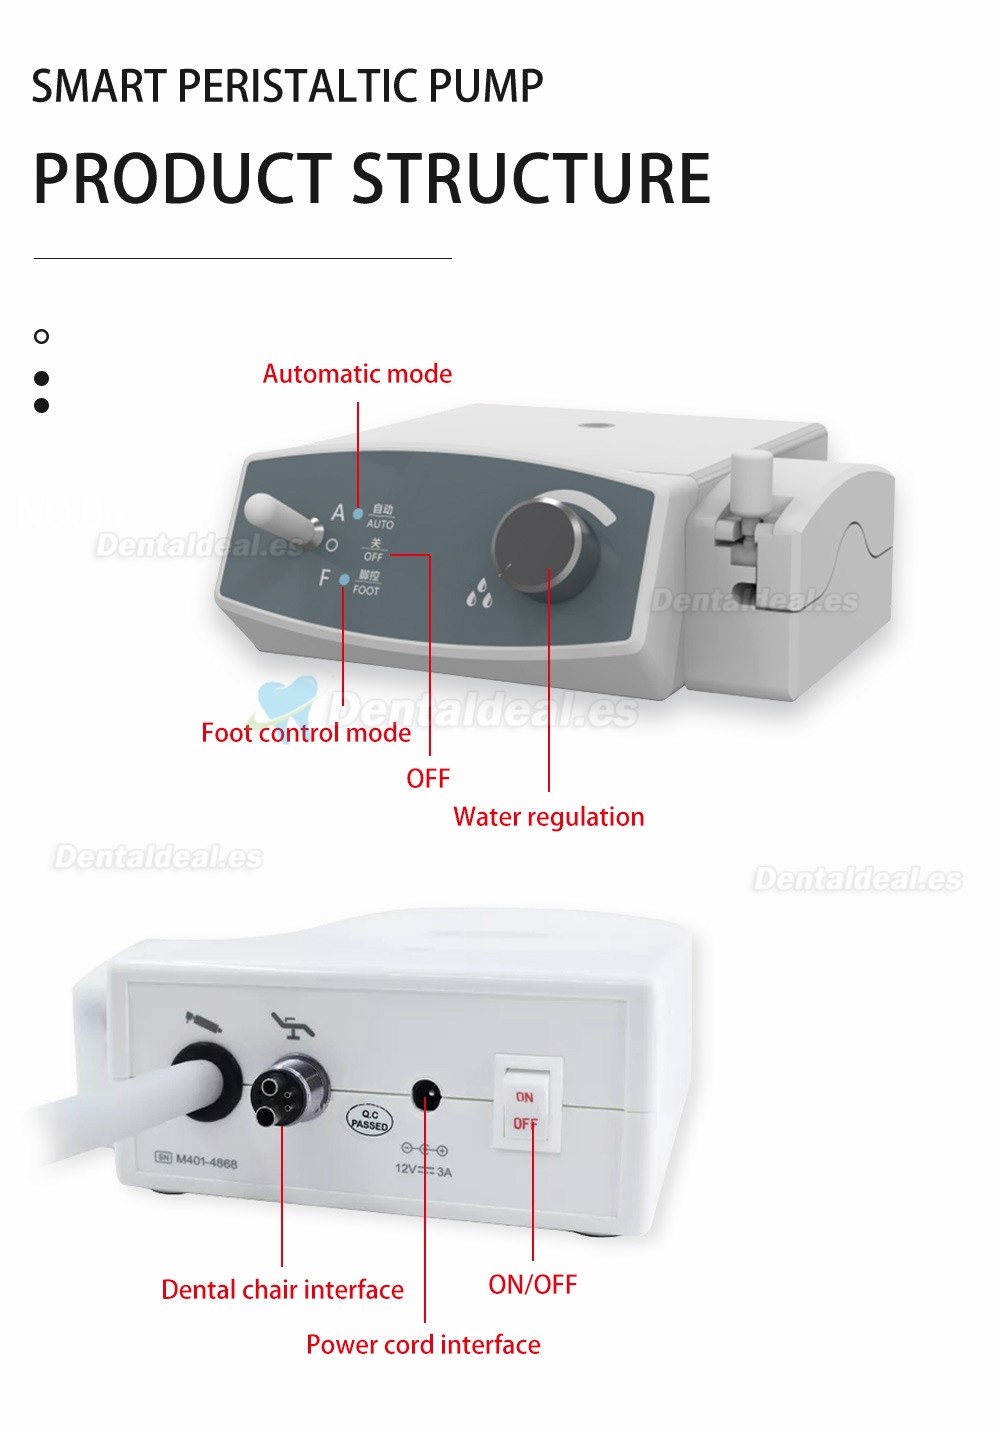 COXO CX265-76 Bomba peristáltica inteligente para motor eléctrico dental suministro de agua automático